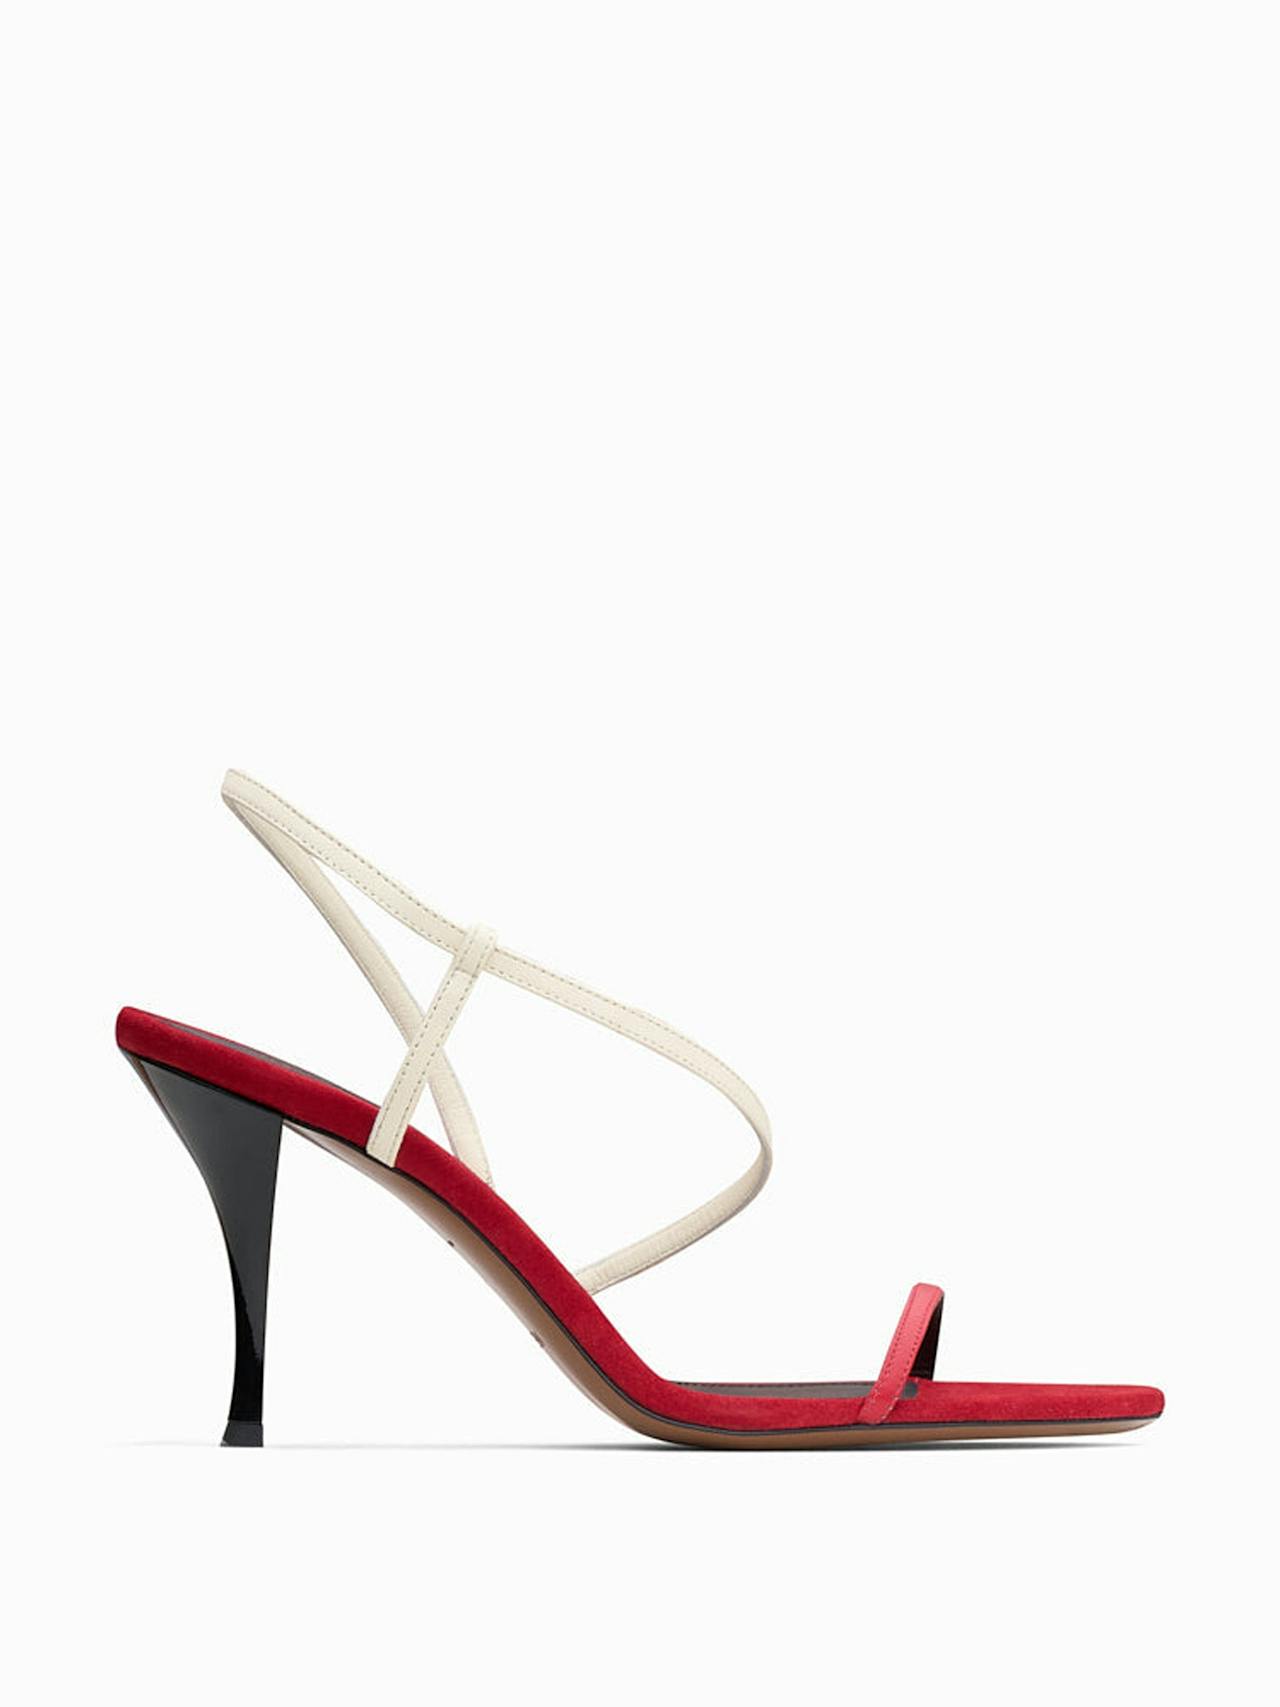 Red and cream Nembus sandals